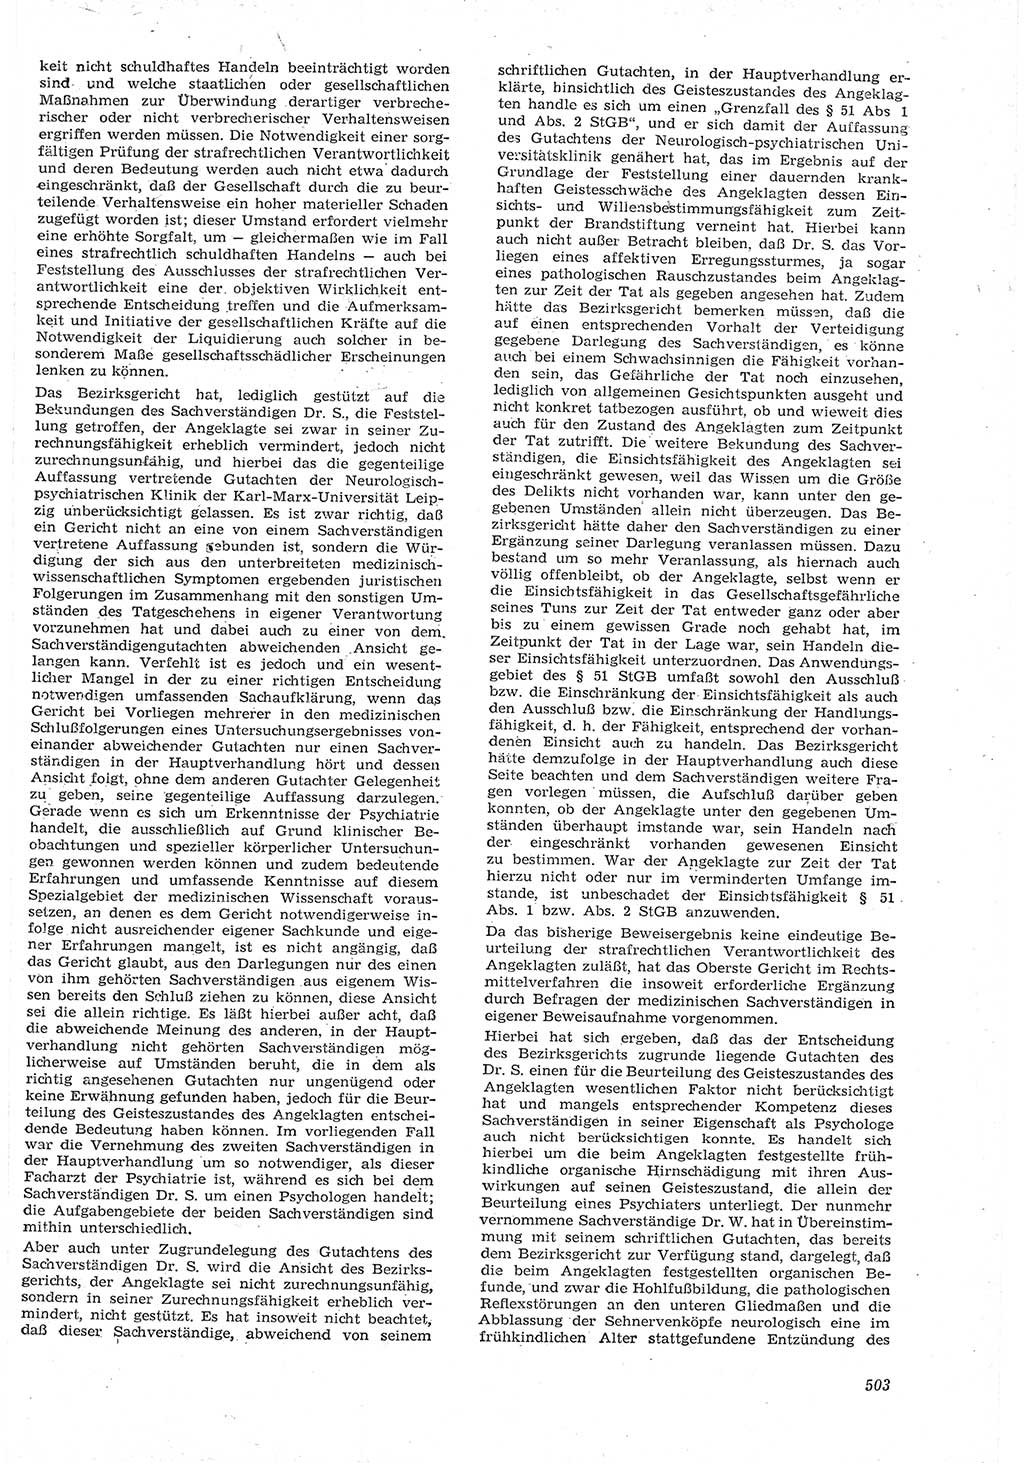 Neue Justiz (NJ), Zeitschrift für Recht und Rechtswissenschaft [Deutsche Demokratische Republik (DDR)], 15. Jahrgang 1961, Seite 503 (NJ DDR 1961, S. 503)